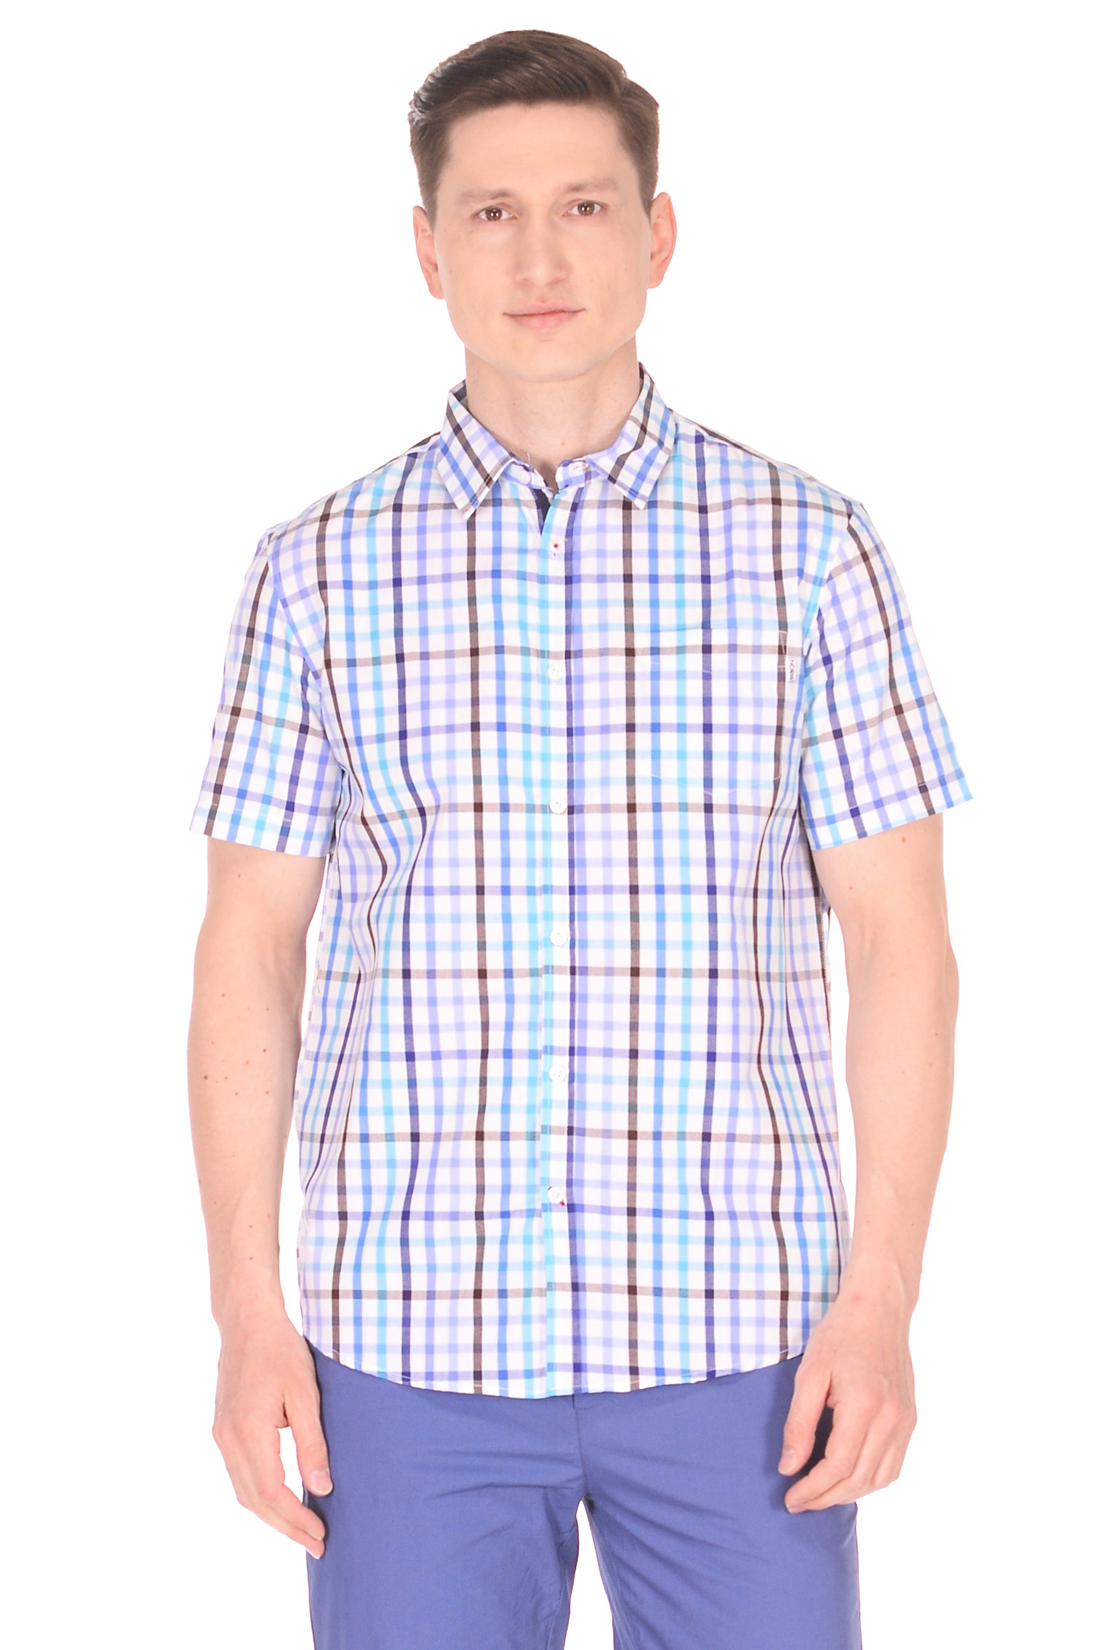 Рубашка с коротким рукавом в яркую клетку (арт. baon B688008), размер S, цвет синий Рубашка с коротким рукавом в яркую клетку (арт. baon B688008) - фото 1